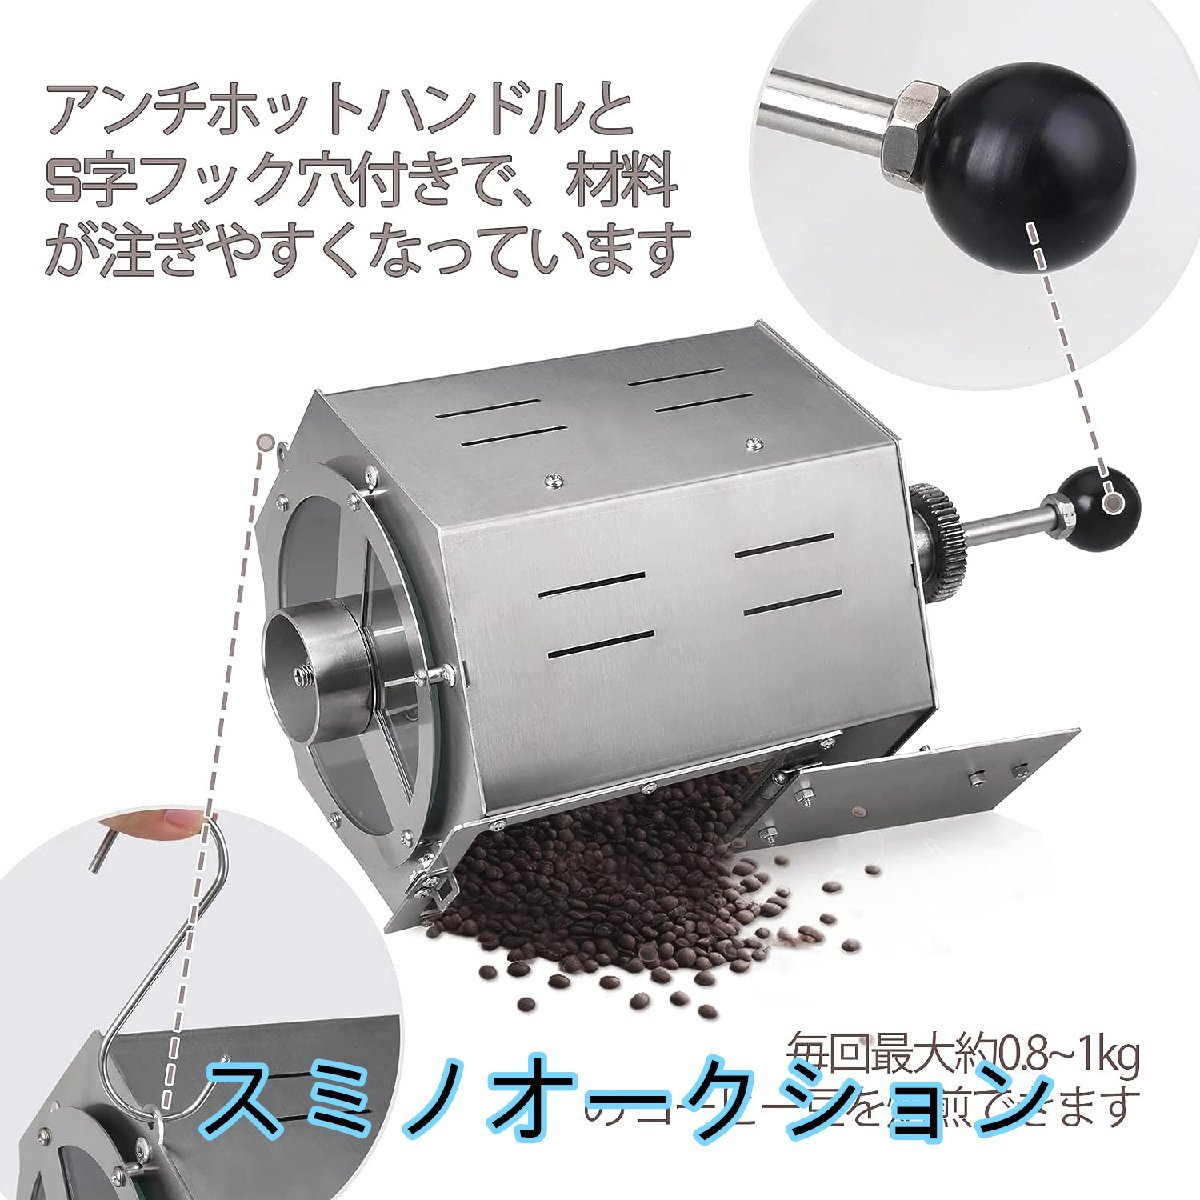  качество гарантия * электрический .. машина прямой огонь тип маленький размер .. машина кофе бобы жаровня барабан модель датчик температуры имеется нержавеющая сталь сталь для бизнеса для бытового использования 5L